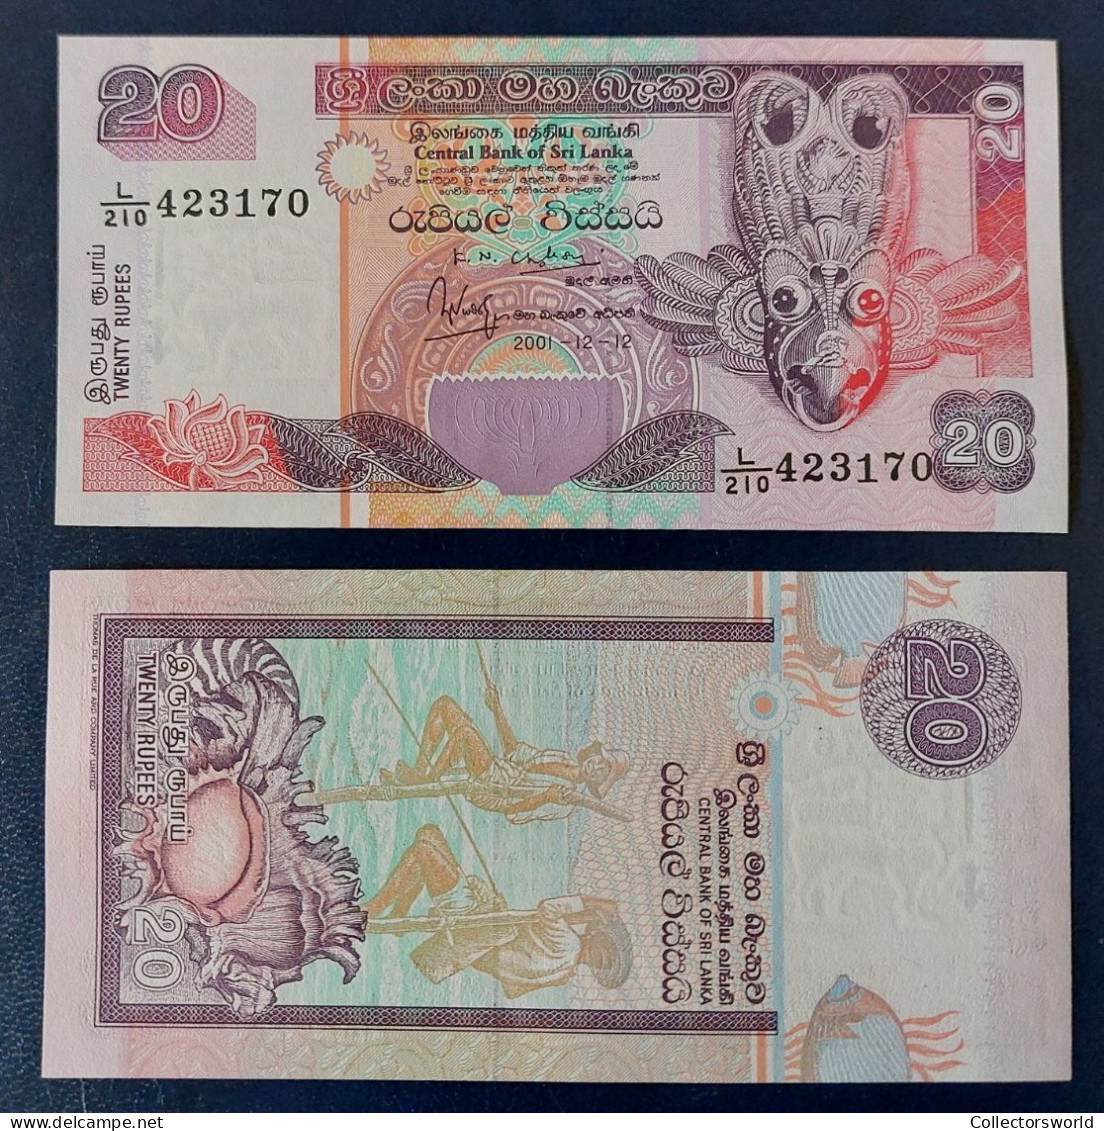 Sri Lanka 20 Rupees 2001 P116 UNC - Sri Lanka